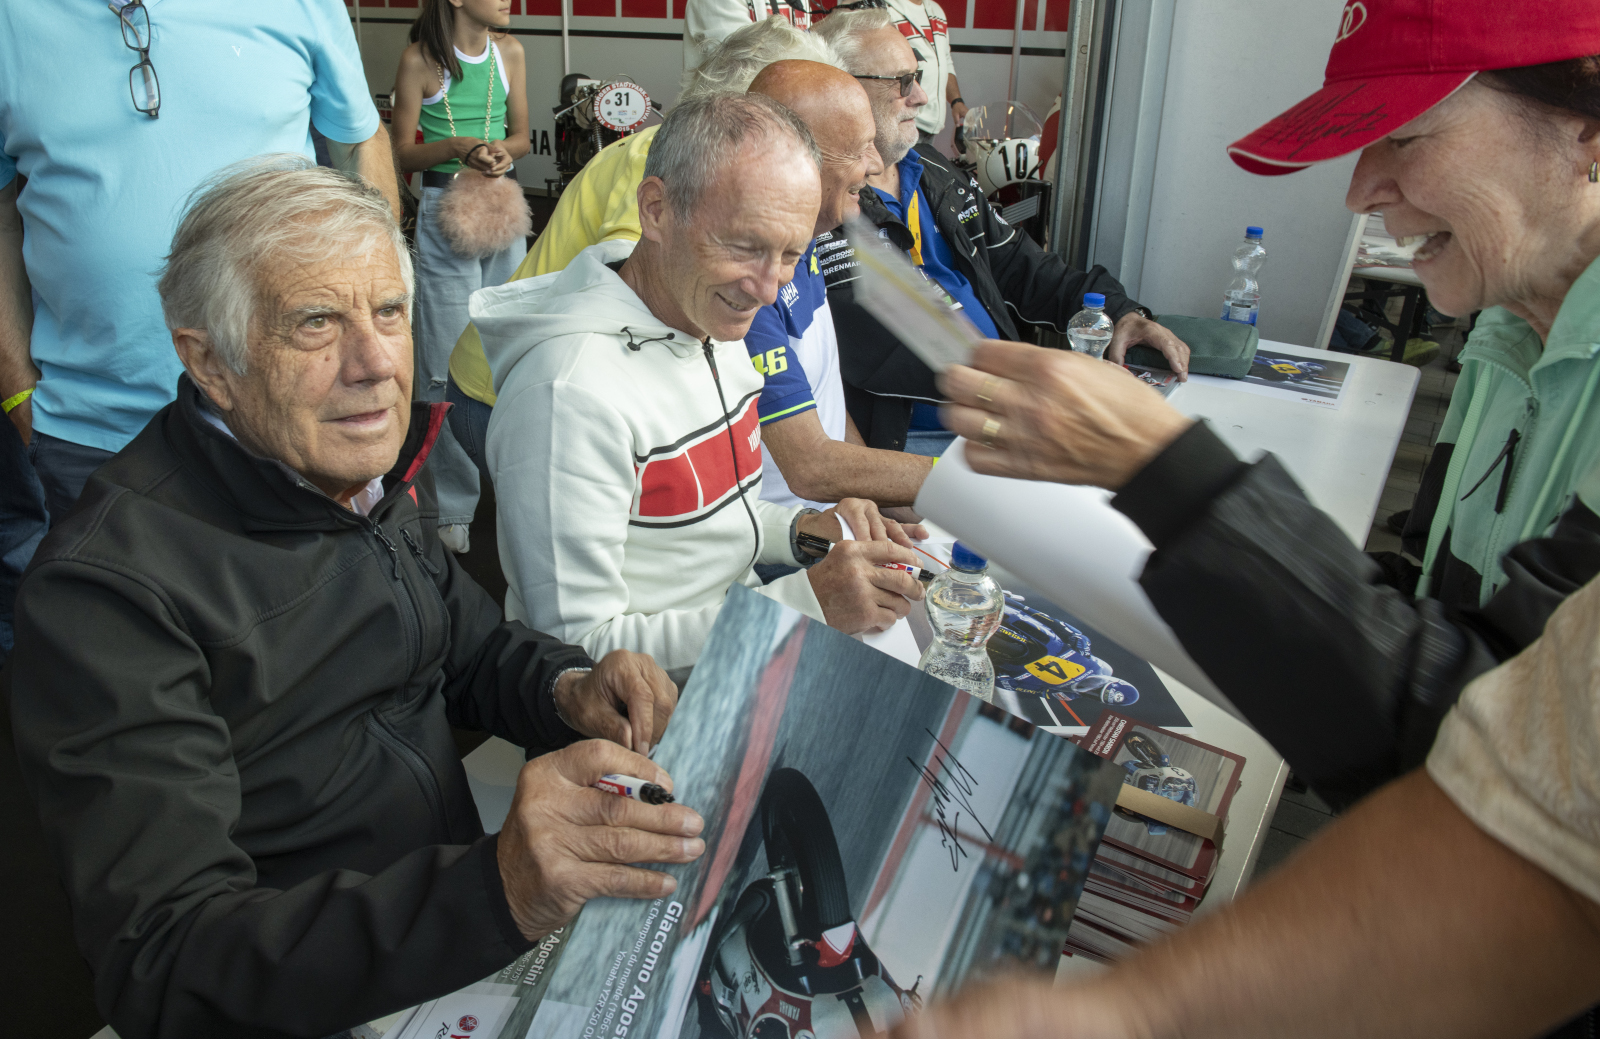 Giacomo Agostini, ehemaliger Motorradrennfahrer, gibt Autogramme (Foto: Detlev Müller)